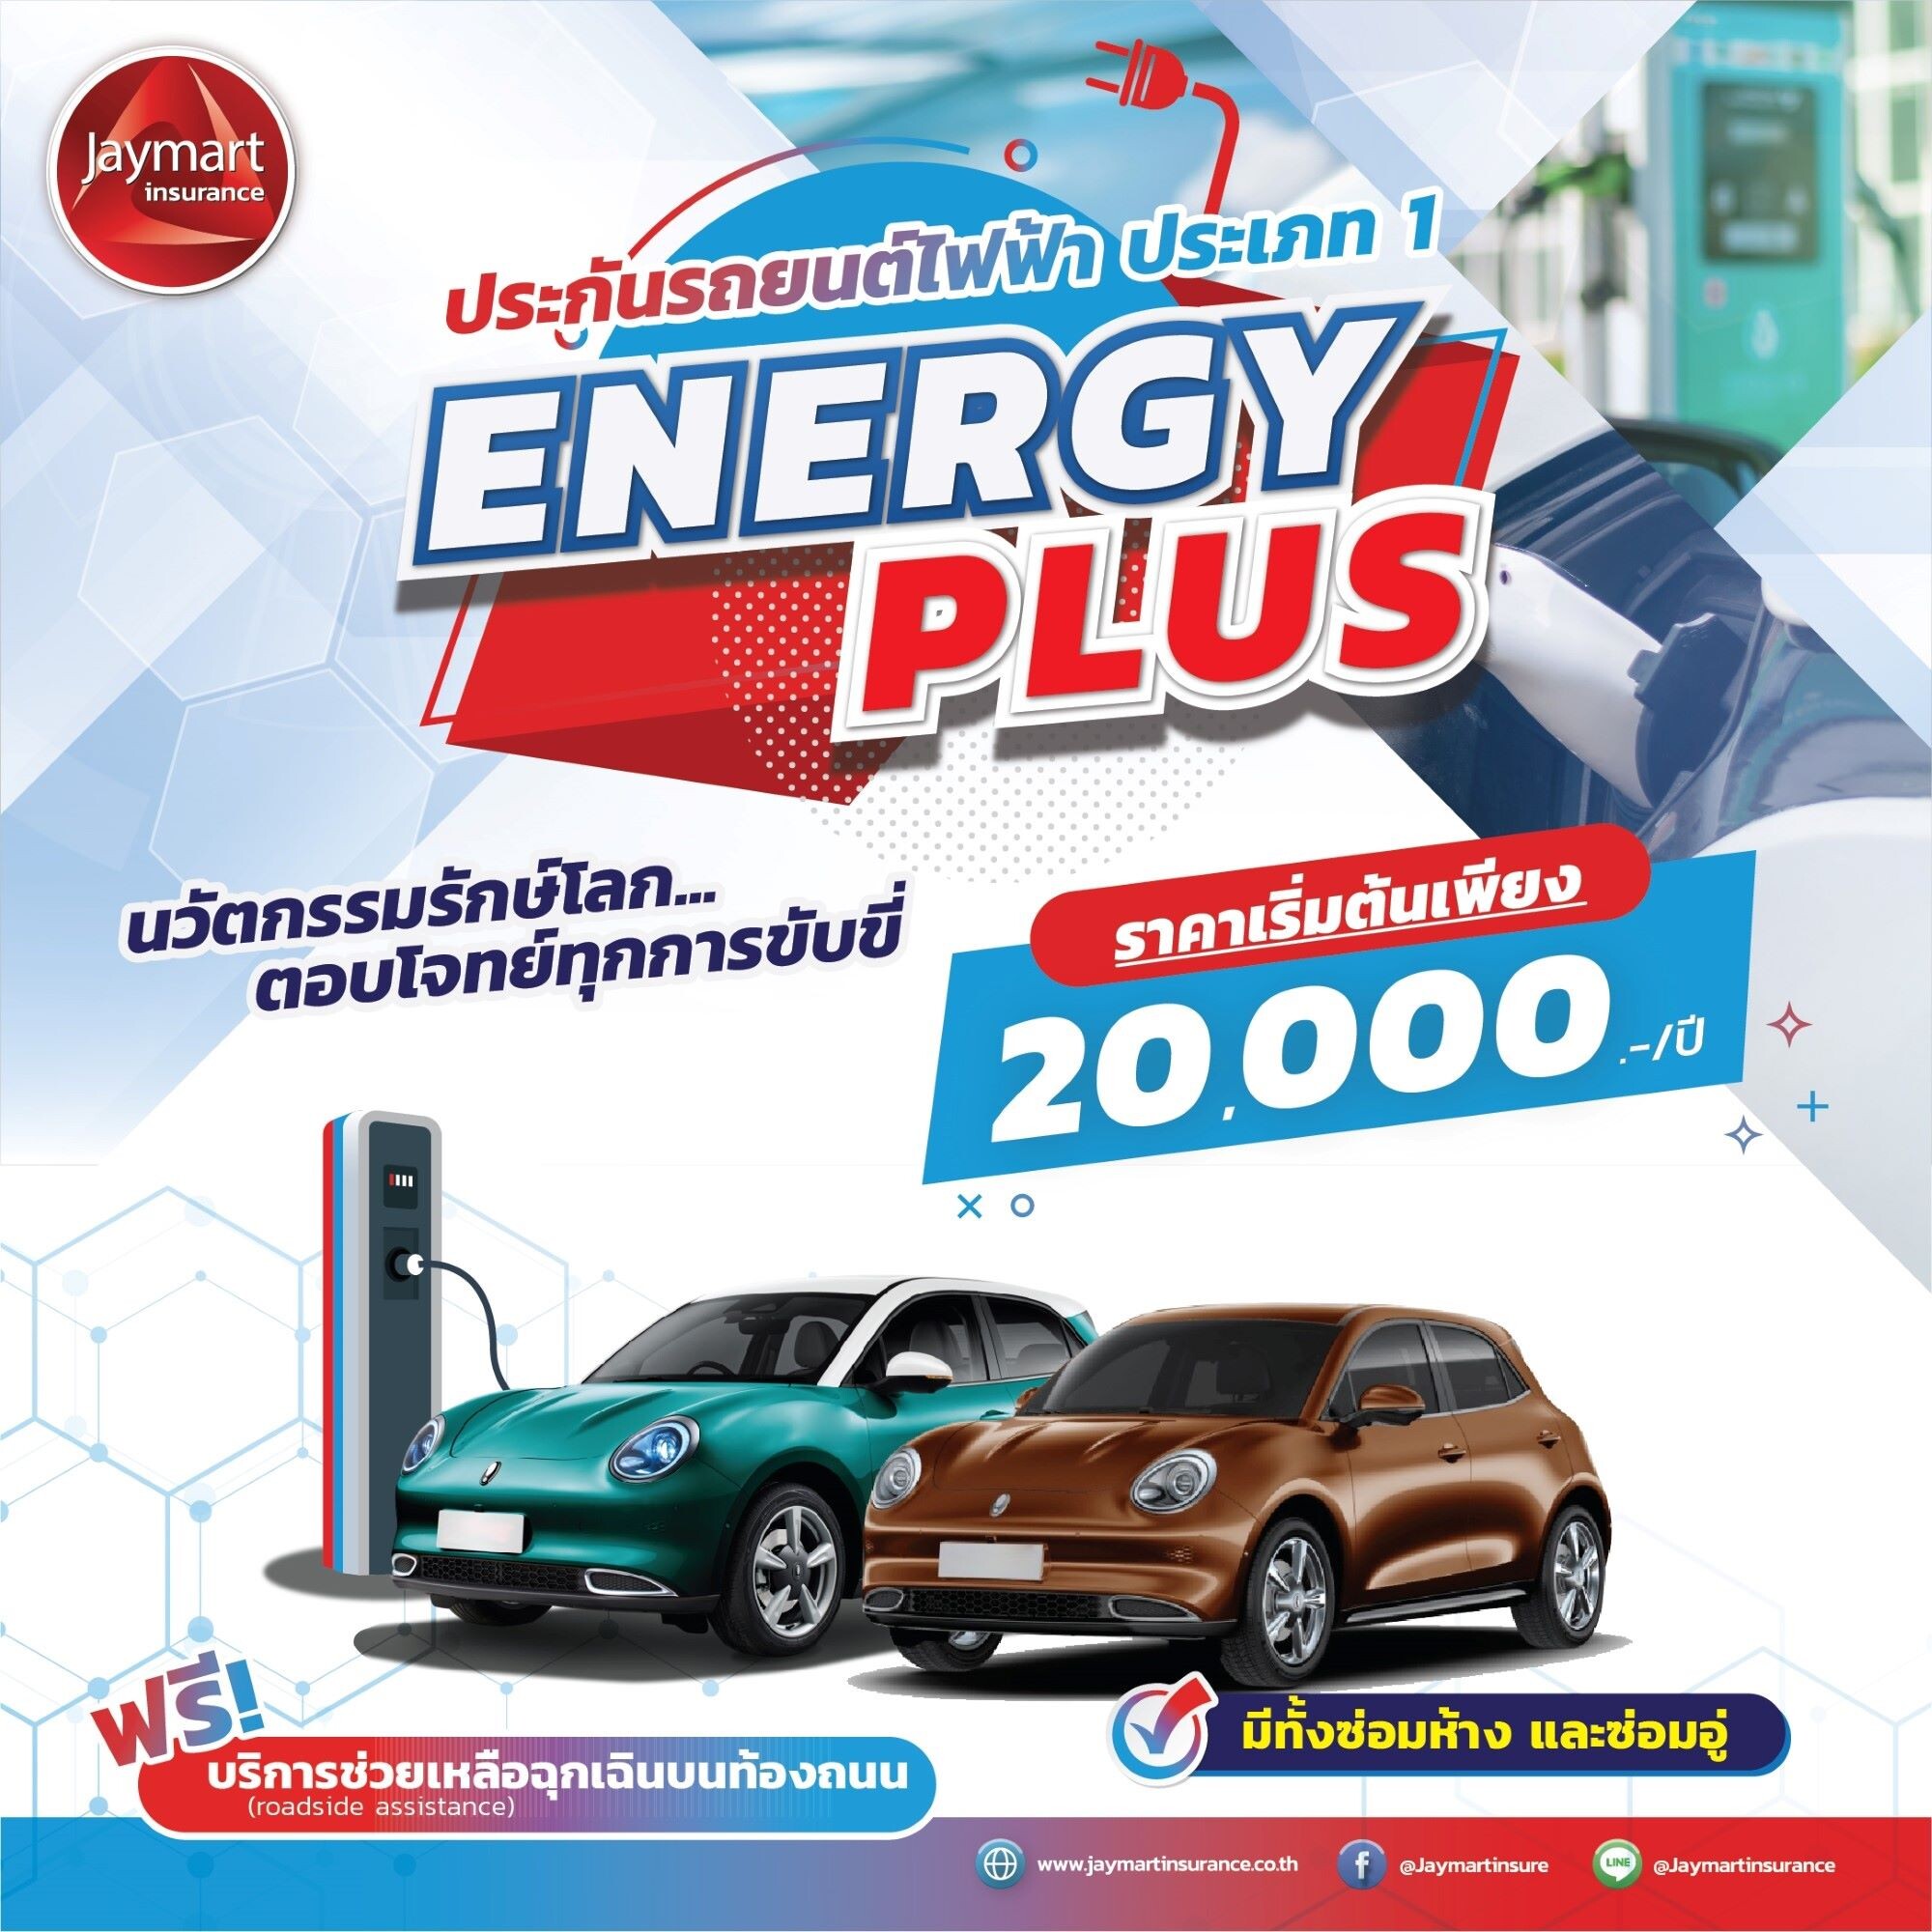 "เจมาร์ท ประกันภัย" เปิดตัวประกันรถยนต์ไฟฟ้า "Energy Plus" รับเทรนด์ผู้บริโภคยุคใหม่ ค่าเบี้ยเริ่มต้น 20,000 บาท/ปี